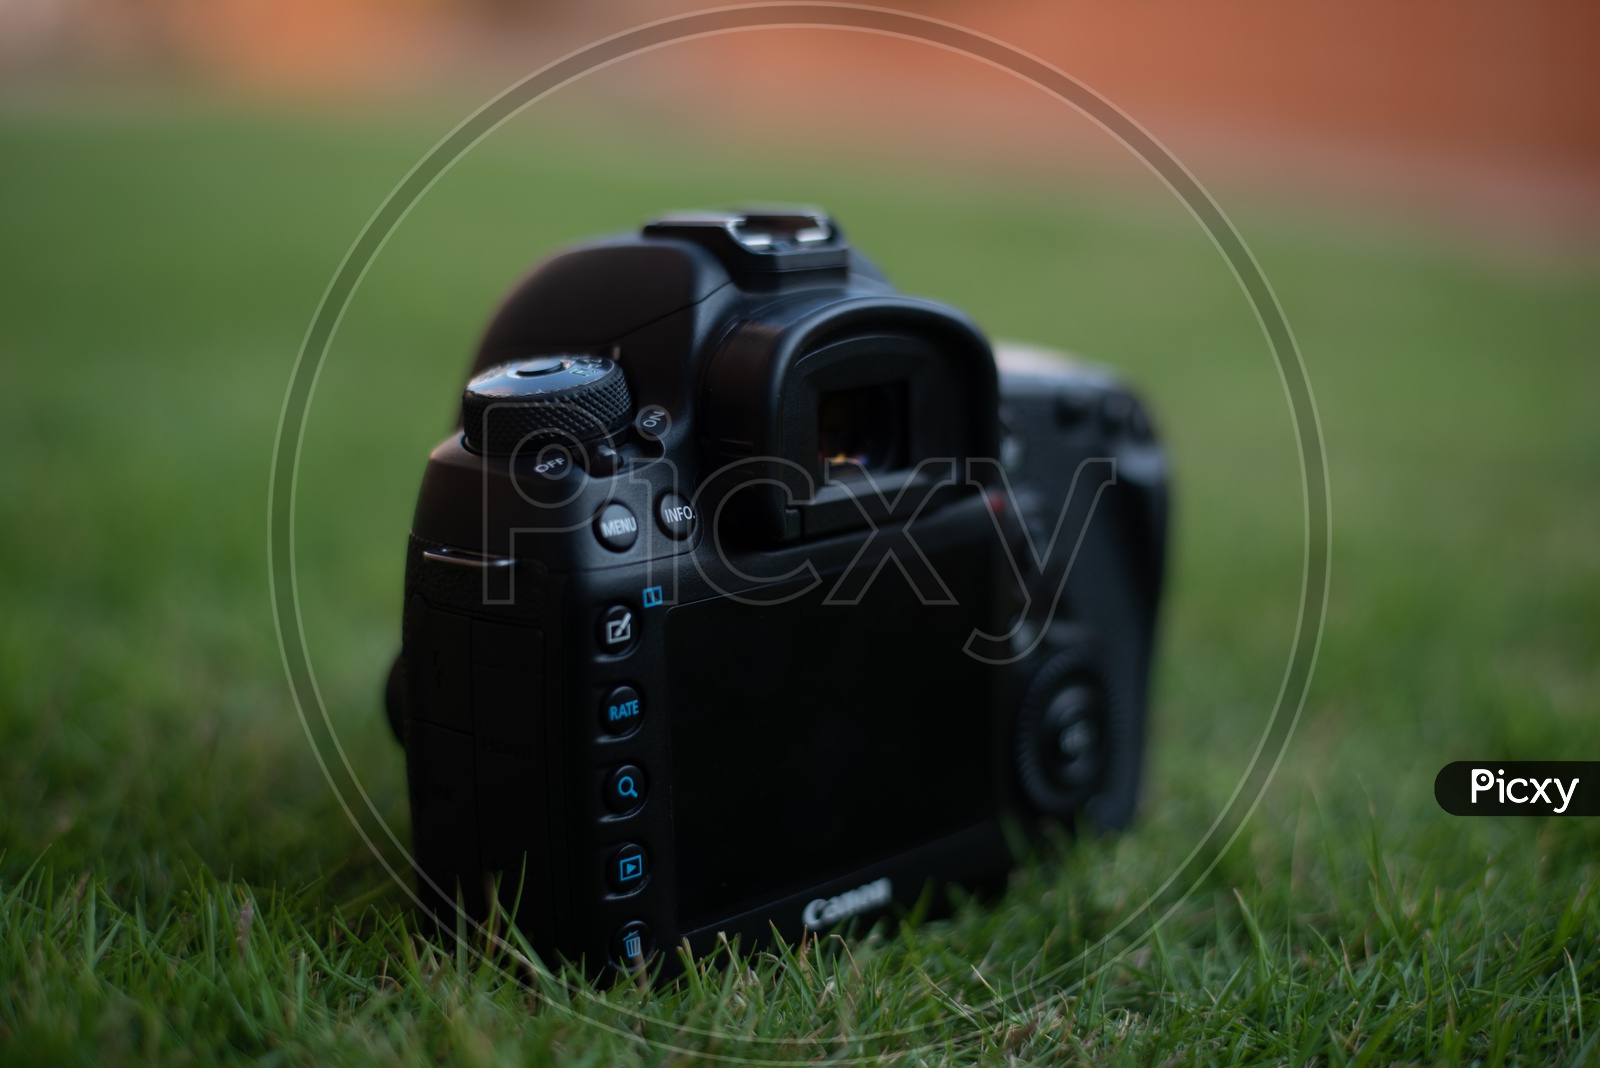 Canon Eos 5D Mark IV   DSLR Camera On Lawn Garden Grass Backdrop